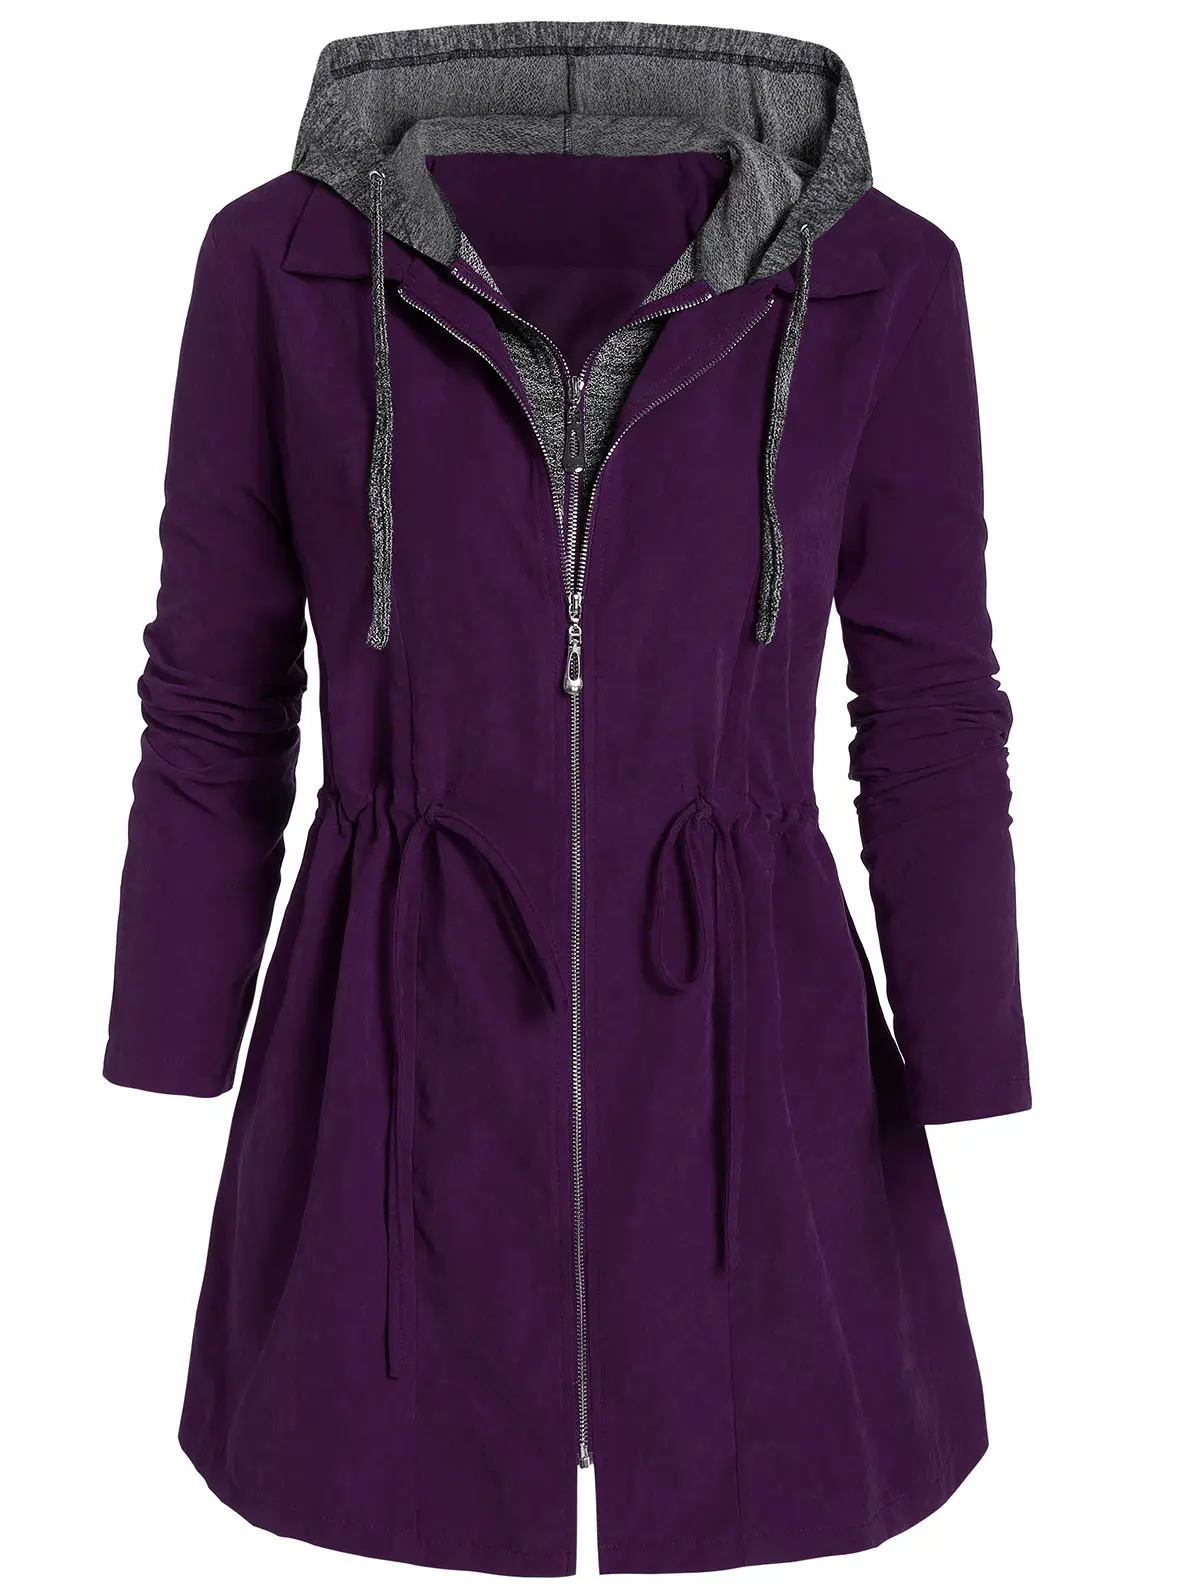 ROSEGAL размера плюс Marled панель с капюшоном Туника пальто женское на молнии Fly Space Dye пальто высокие куртки до талии Осень Зима Повседневная Верхняя одежда